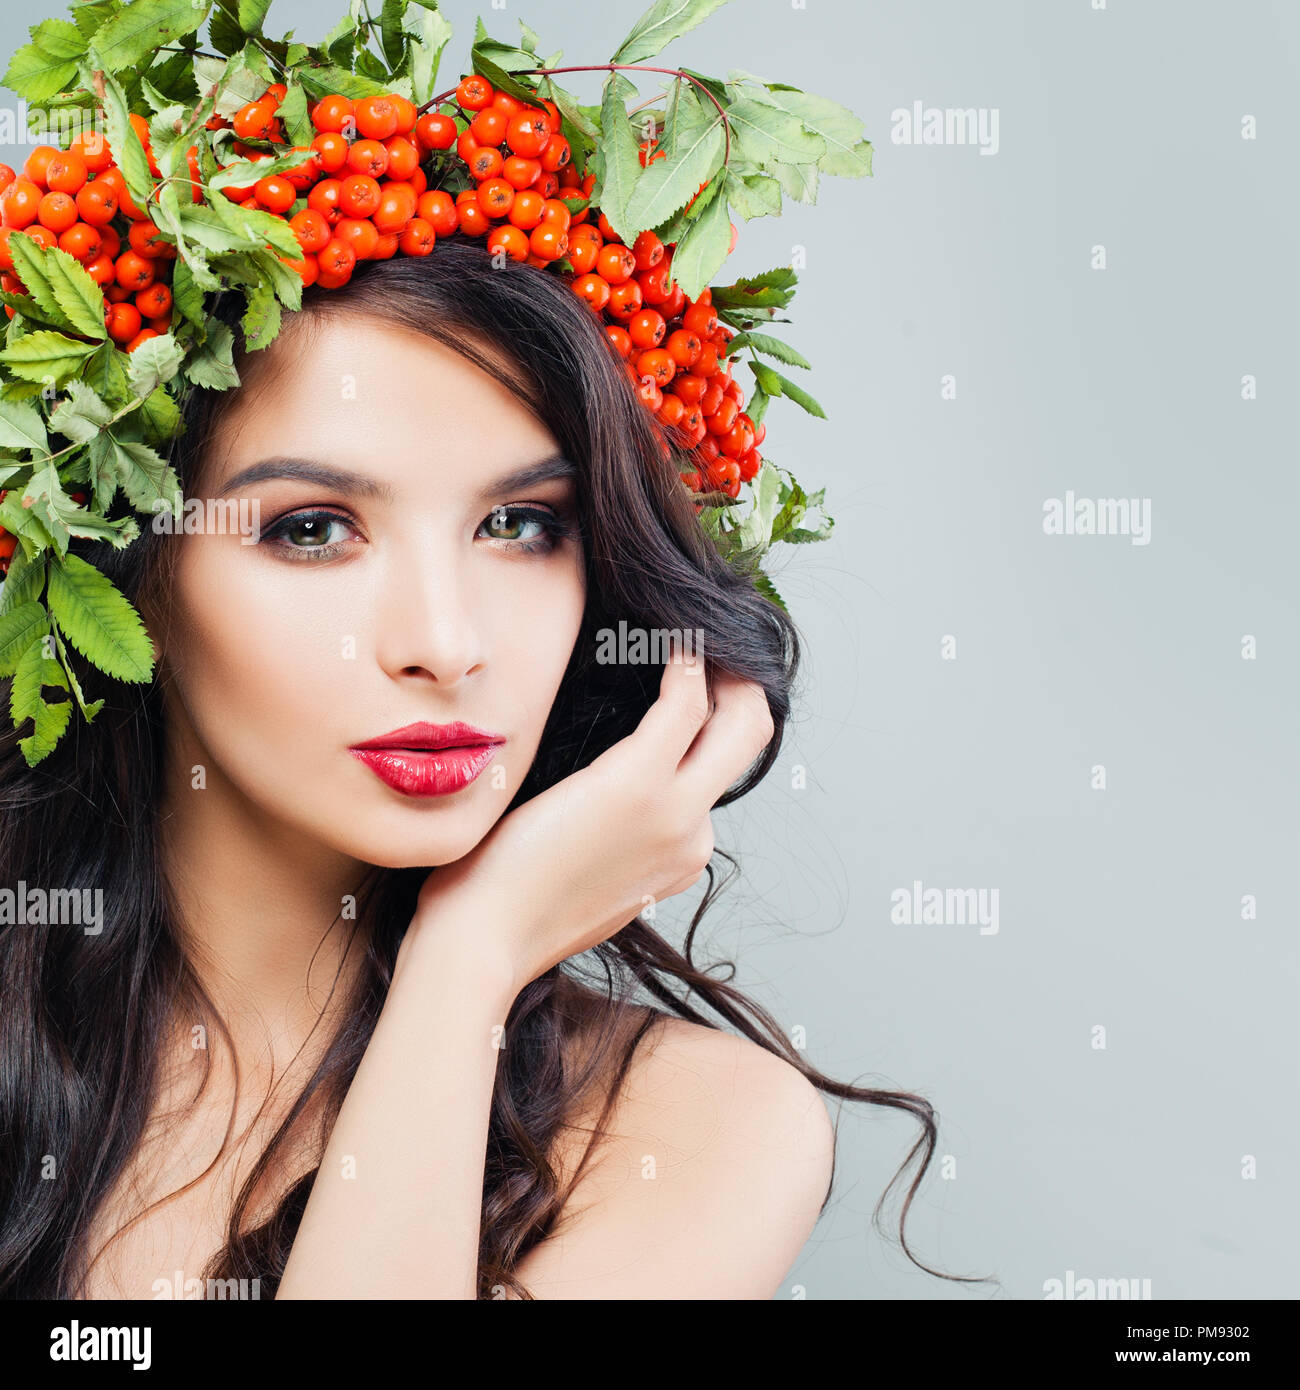 Natürliche Schönheit. Junge Frau mit Make-up-niedlich, lange wellige Haare und rote Beeren und grüne Blätter auf dem Kopf Stockfoto